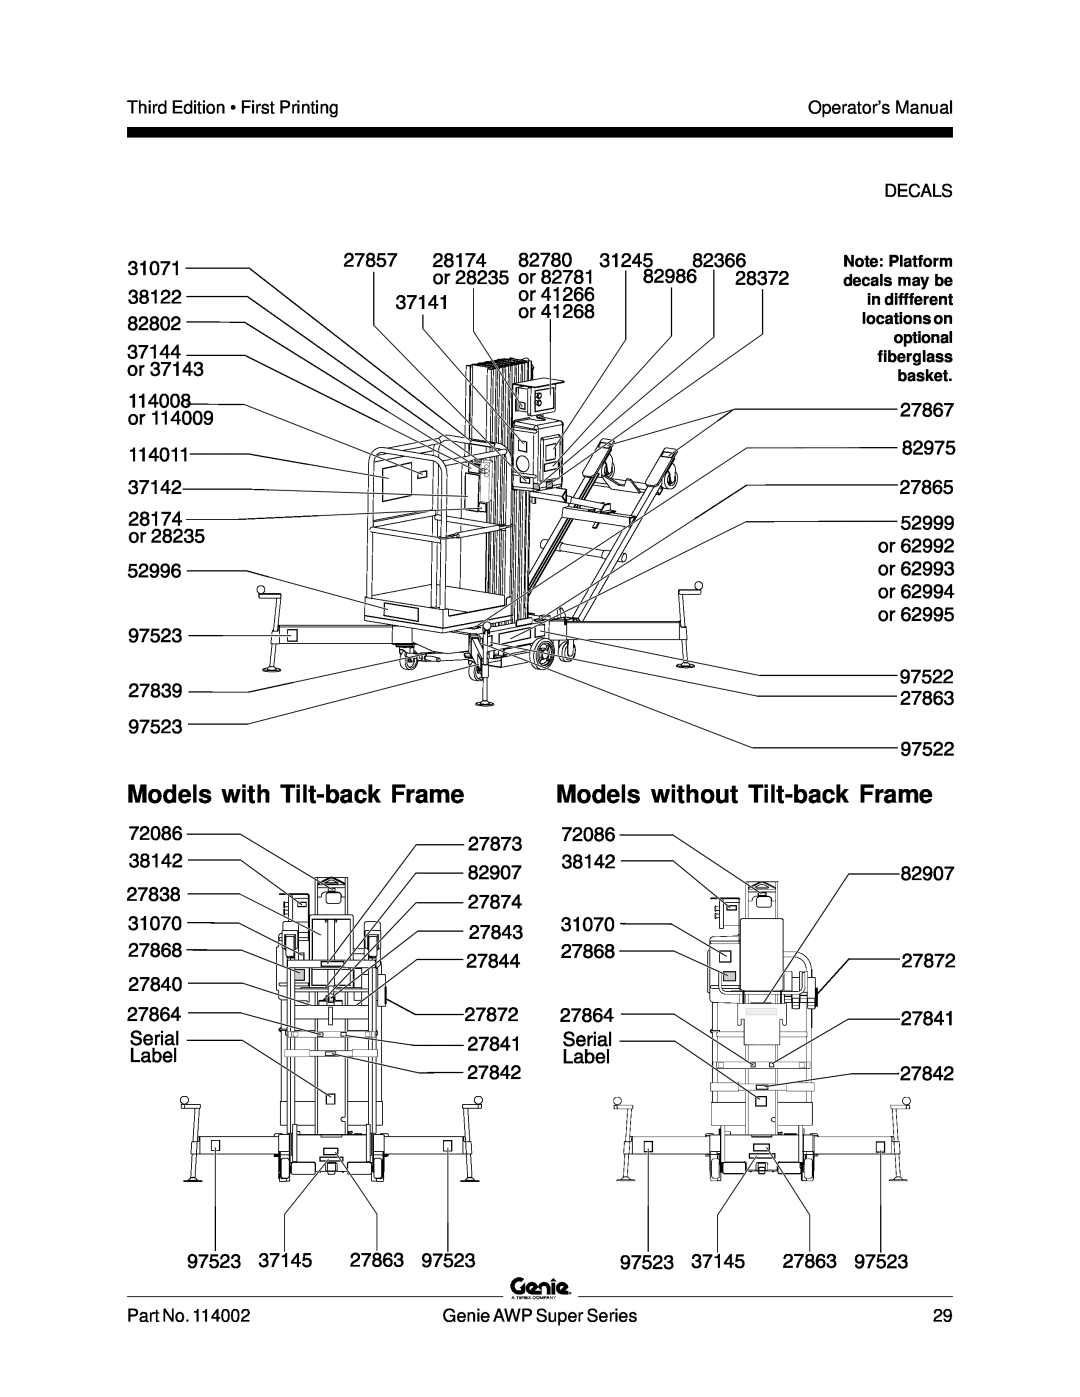 Genie 114002 manual Models with Tilt-back Frame, Models without Tilt-back Frame 